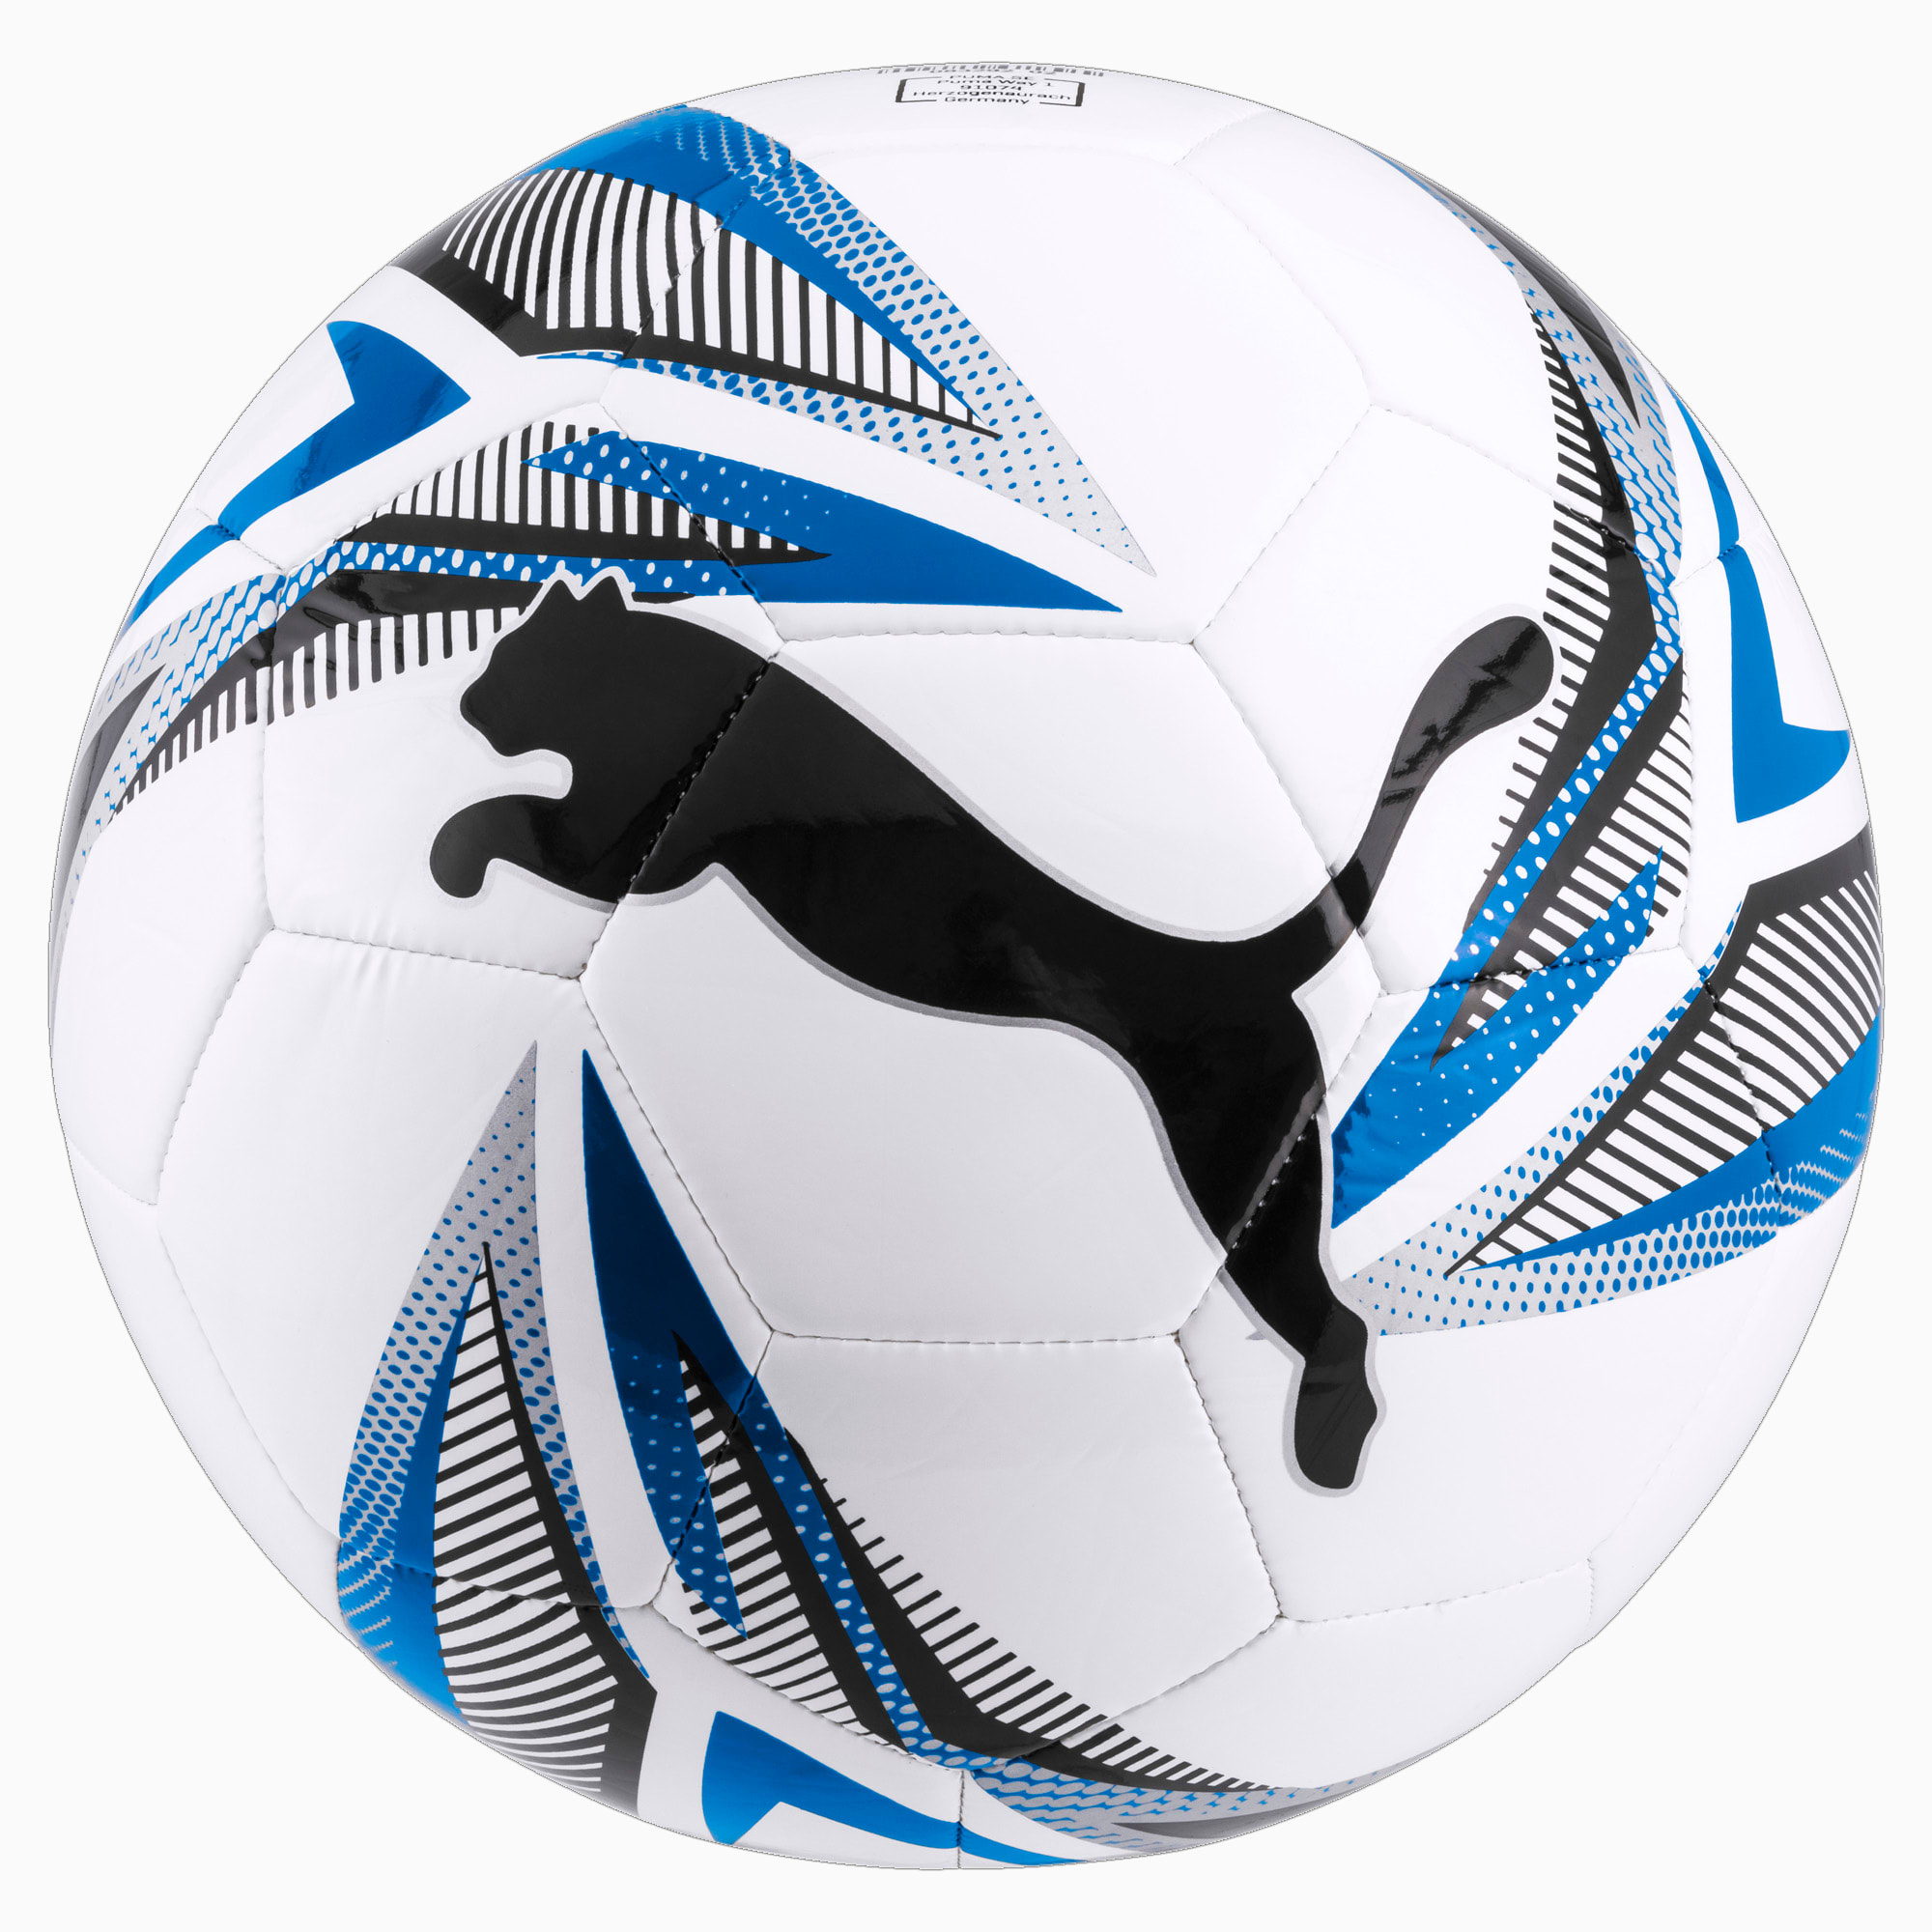 Image of PUMA ftblPLAY Big Cat Fußball | Mit Aucun | Weiß/Blau/Schwarz | Größe: 5